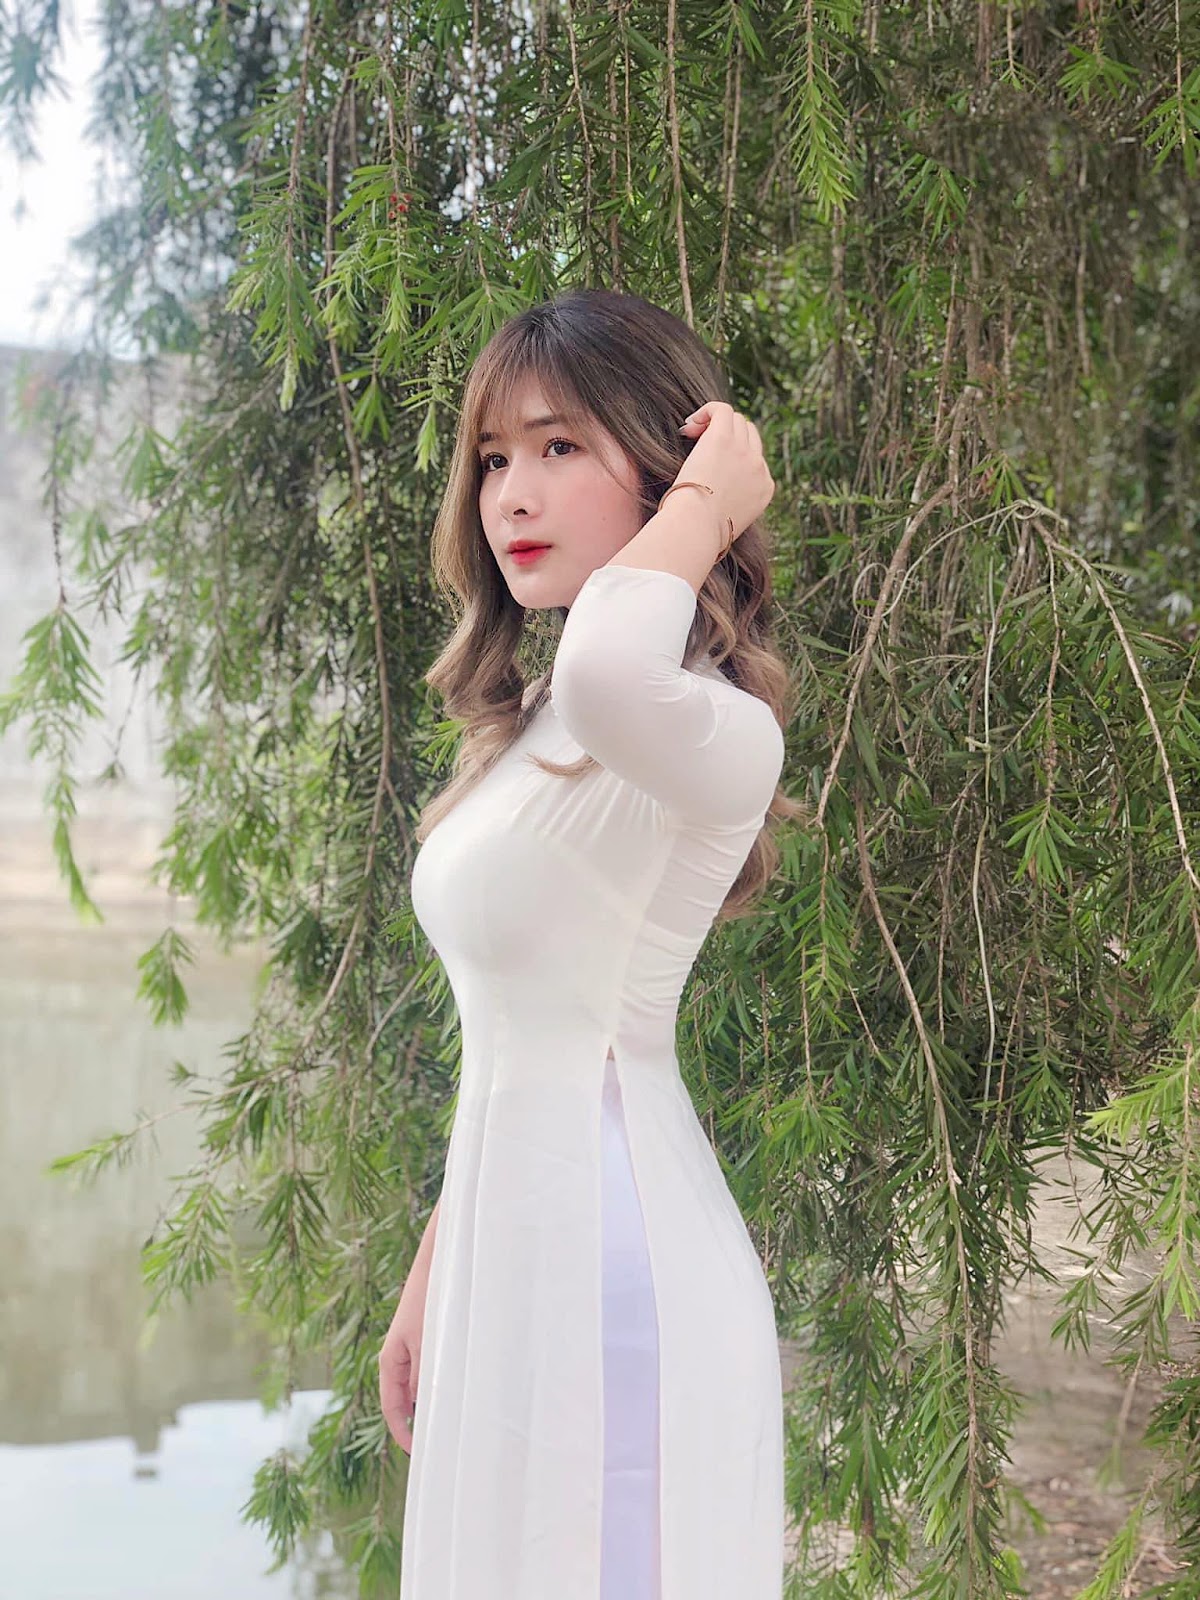 Quỳnh Alee – xứng danh ‘nữ hoàng drama’ trong giới streamer: Anh em xin link mệt nghỉ - ảnh 11